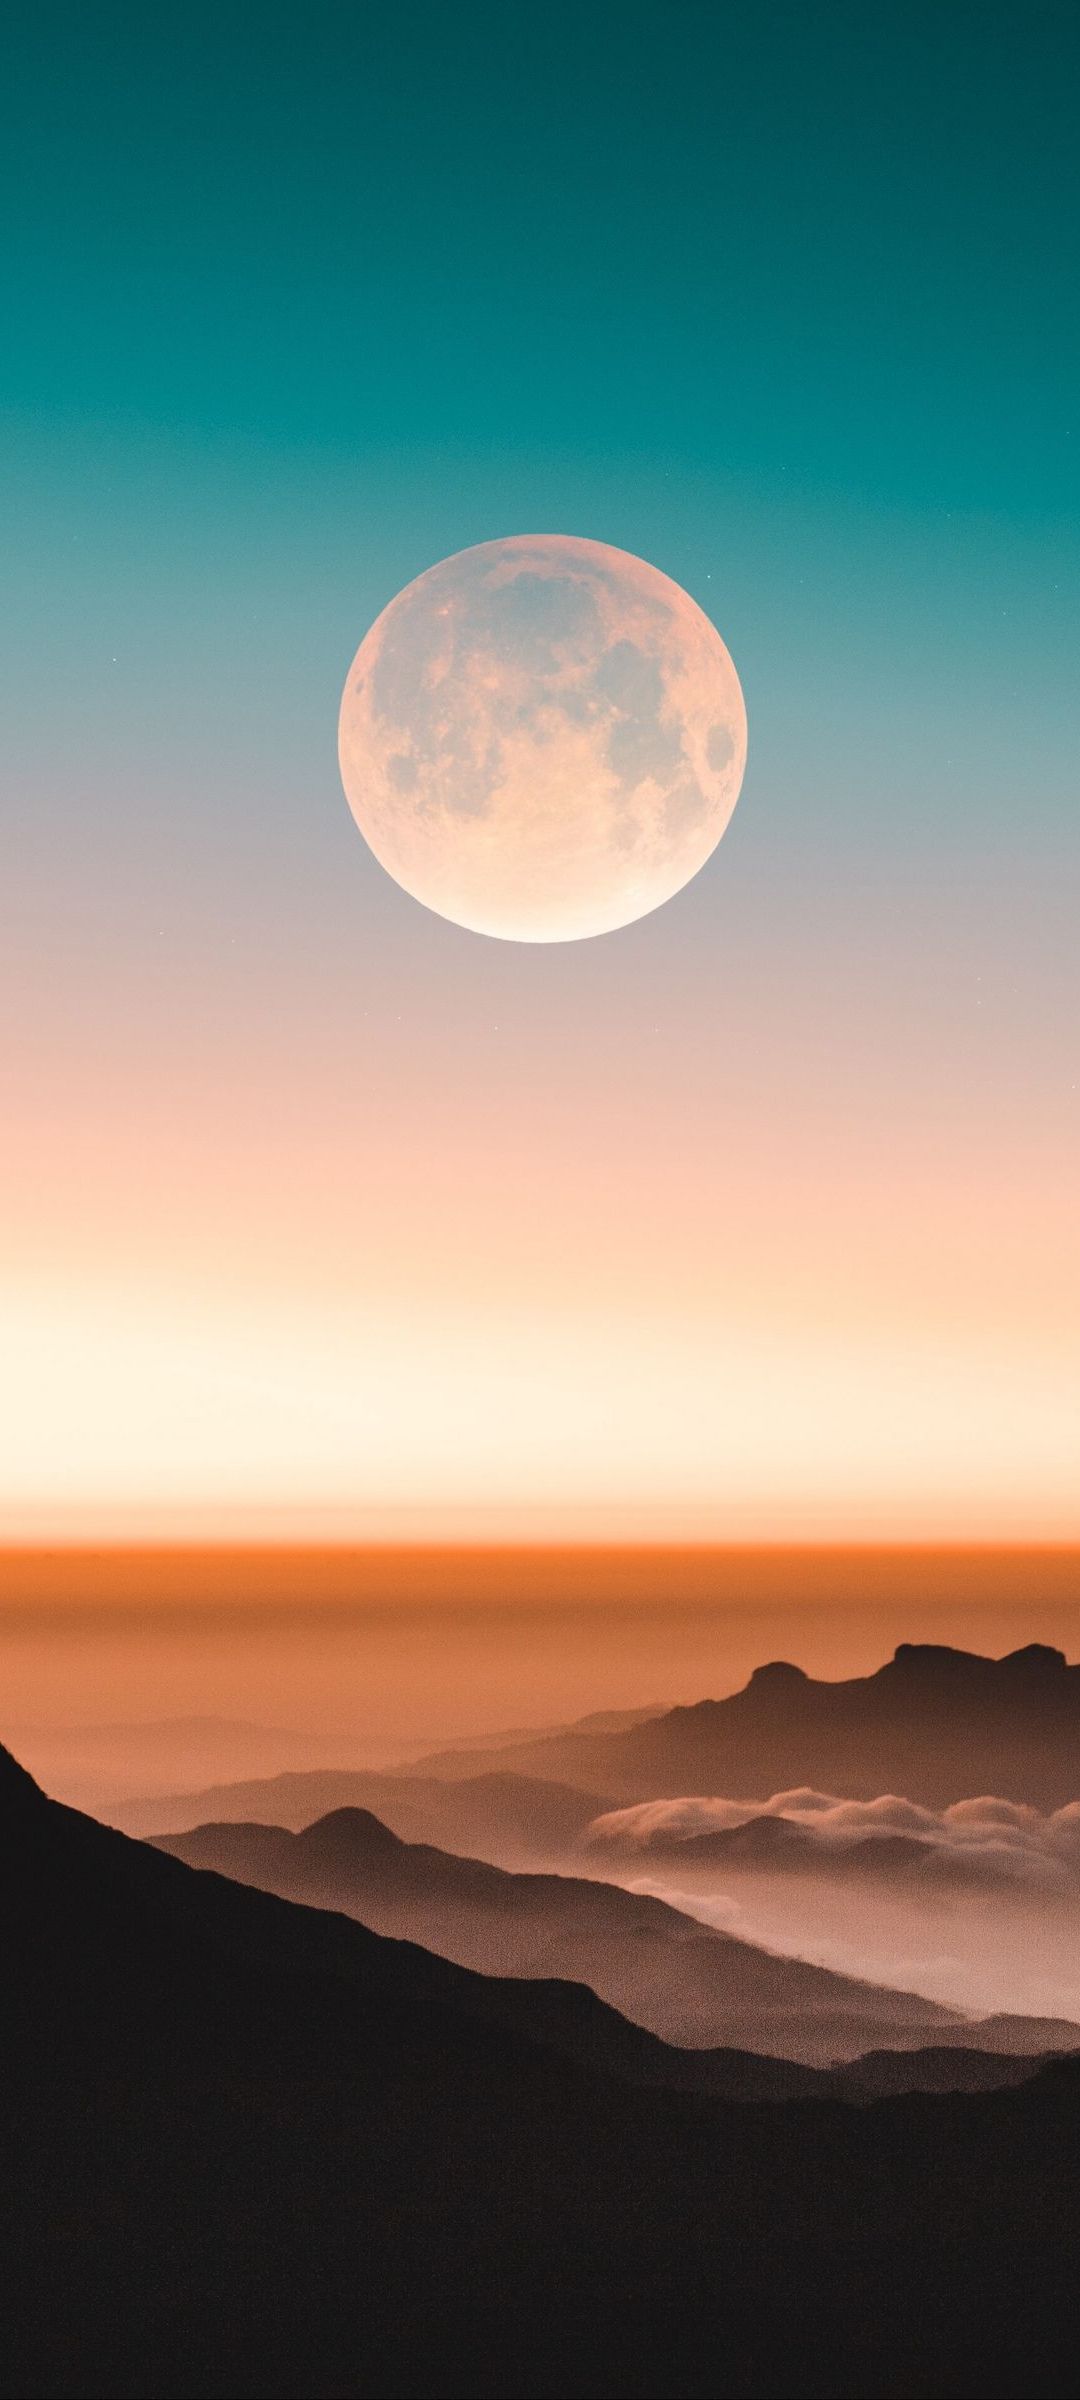 満月 淡い青 オレンジのグラデーションの空 山 Oppo Reno3 A Androidスマホ壁紙 待ち受け スマラン